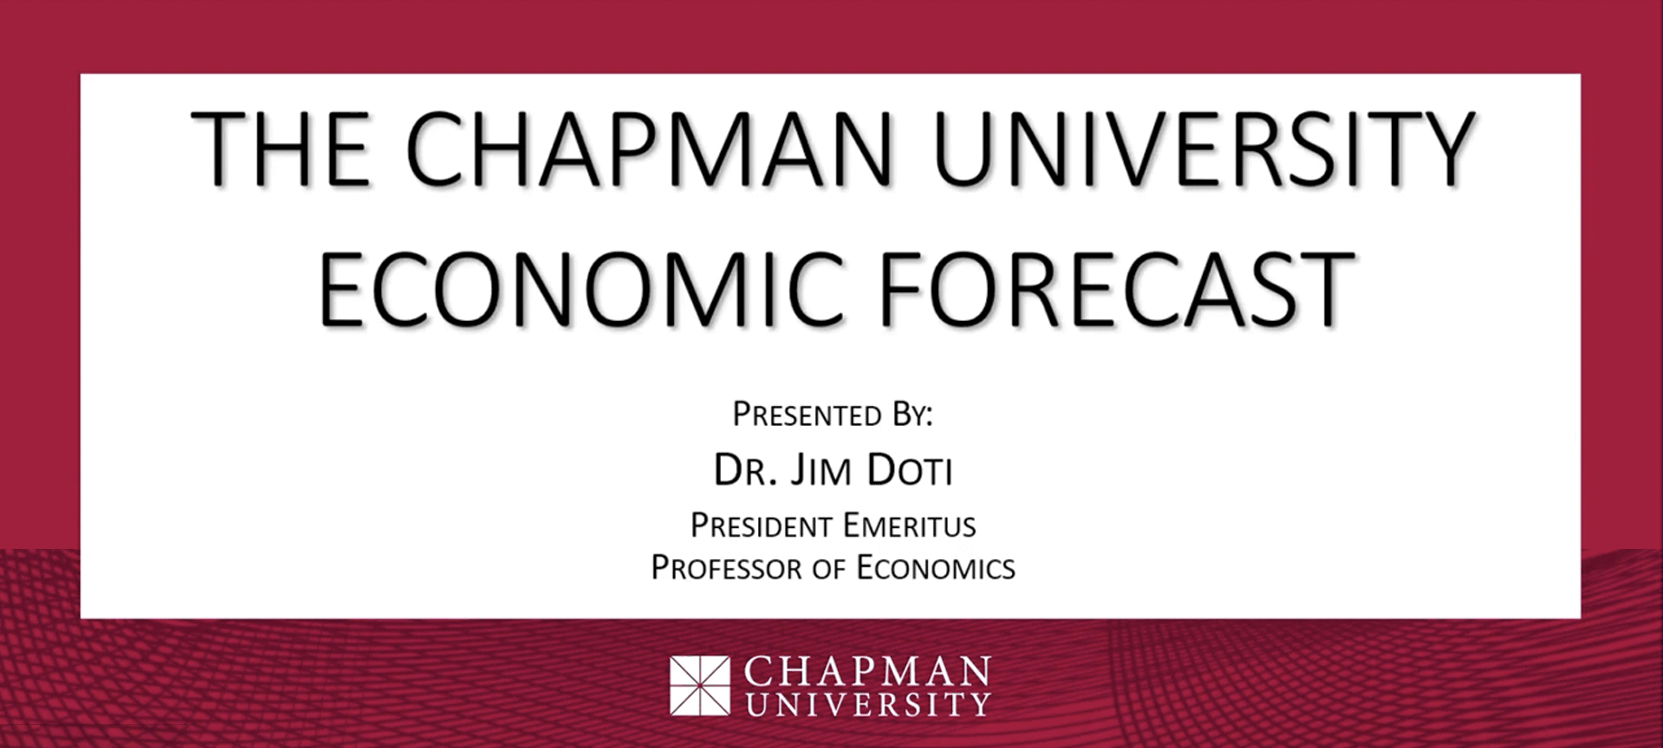 The Chapman University Economic Forecast